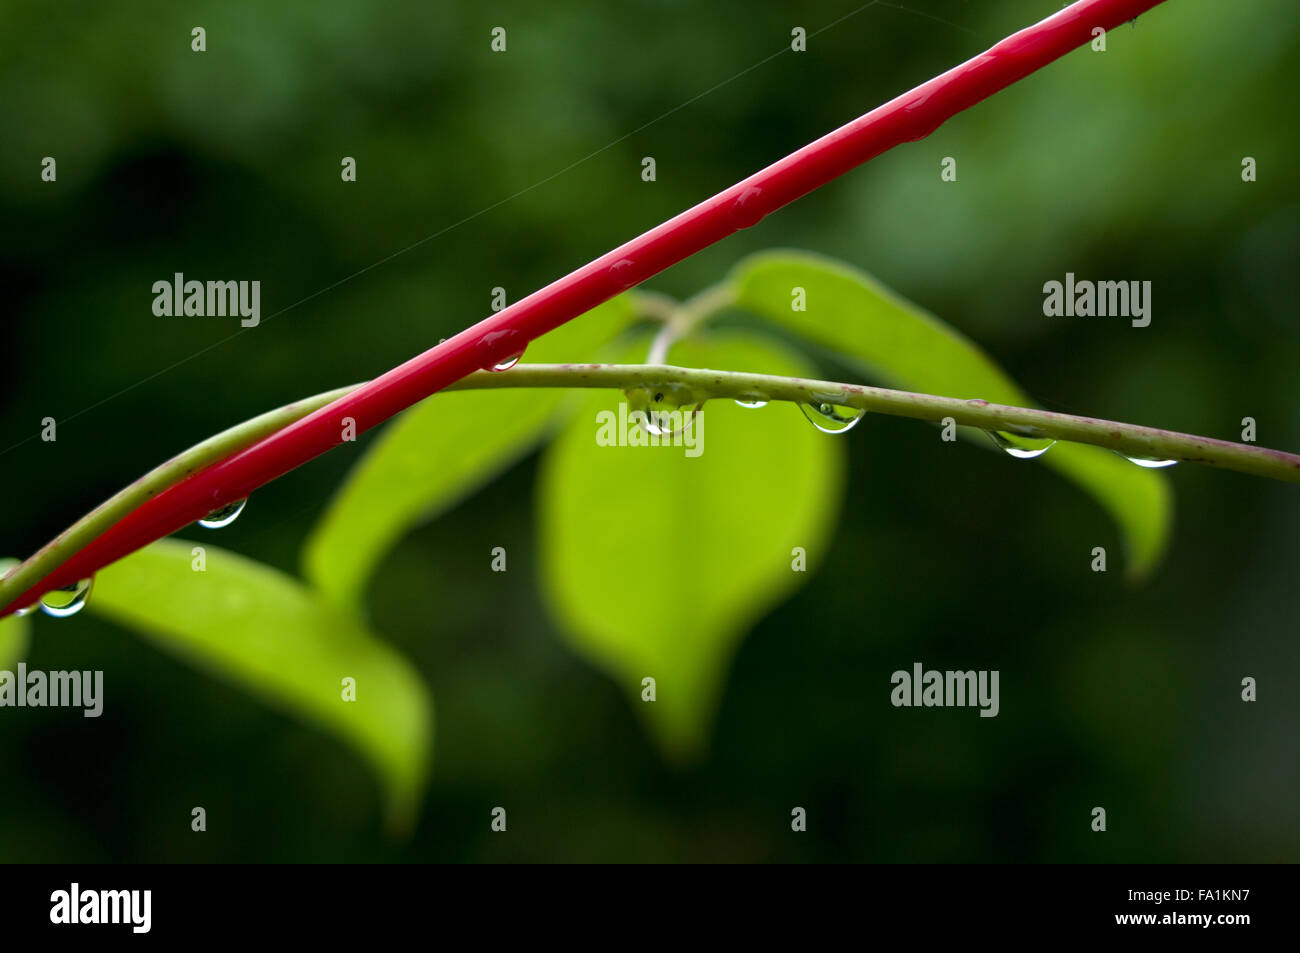 Tautropfen auf einem grünen Zweig mit einem roten Kunststoff-Wäscheleine im Vordergrund und verschwommene grüne Blätter im Hintergrund Stockfoto